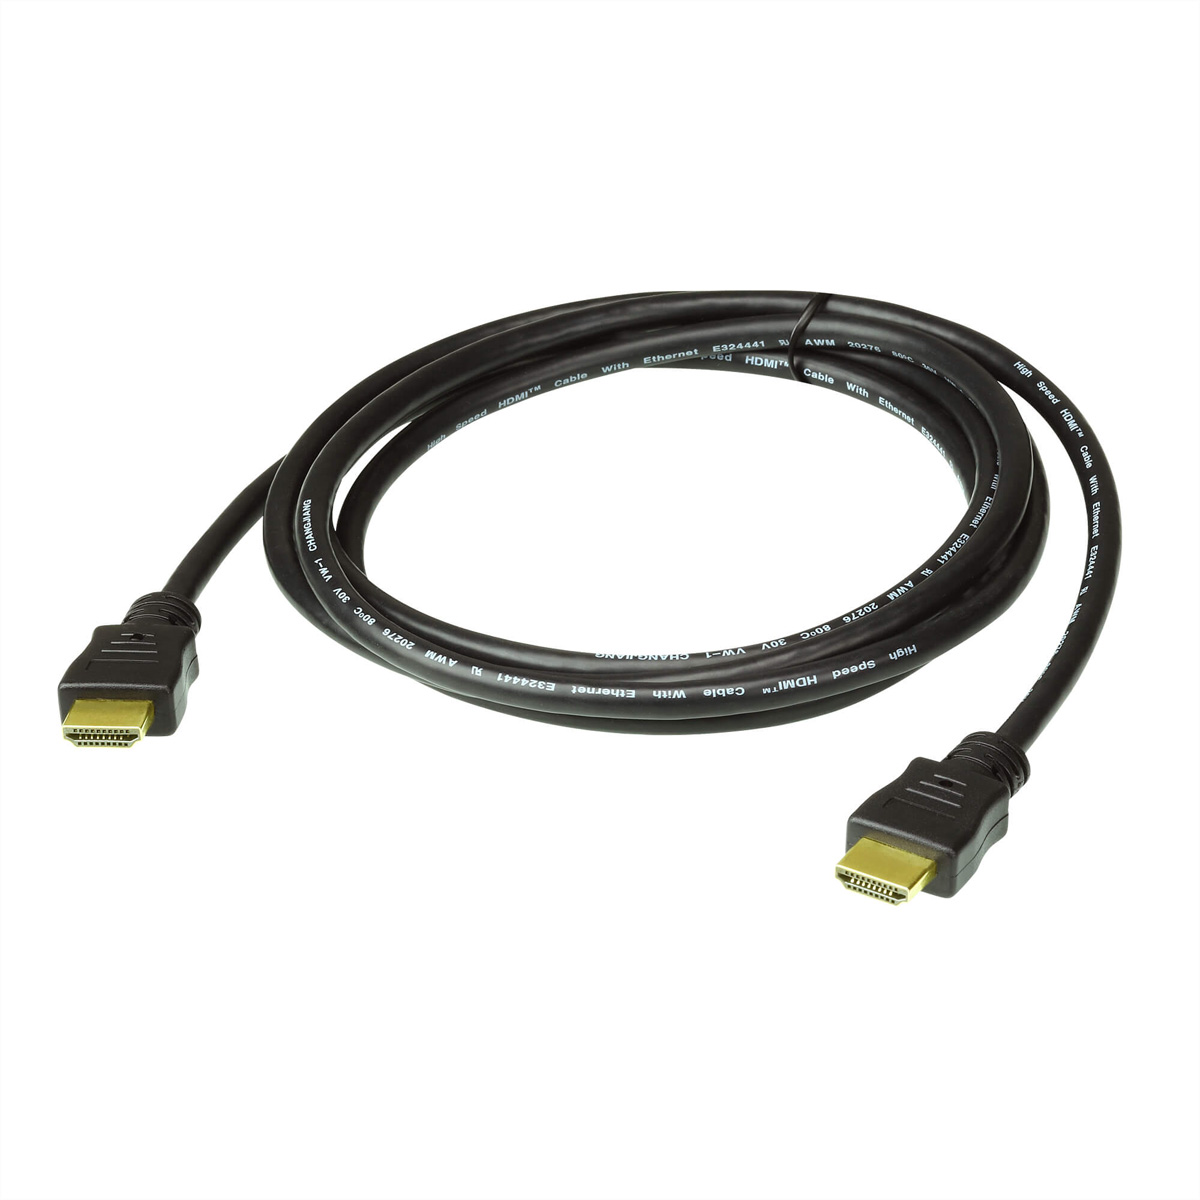 ATEN 2L-7D02H-1 High Speed True 4K HDMI Kabel mit Ethernet, schwarz, 2 m